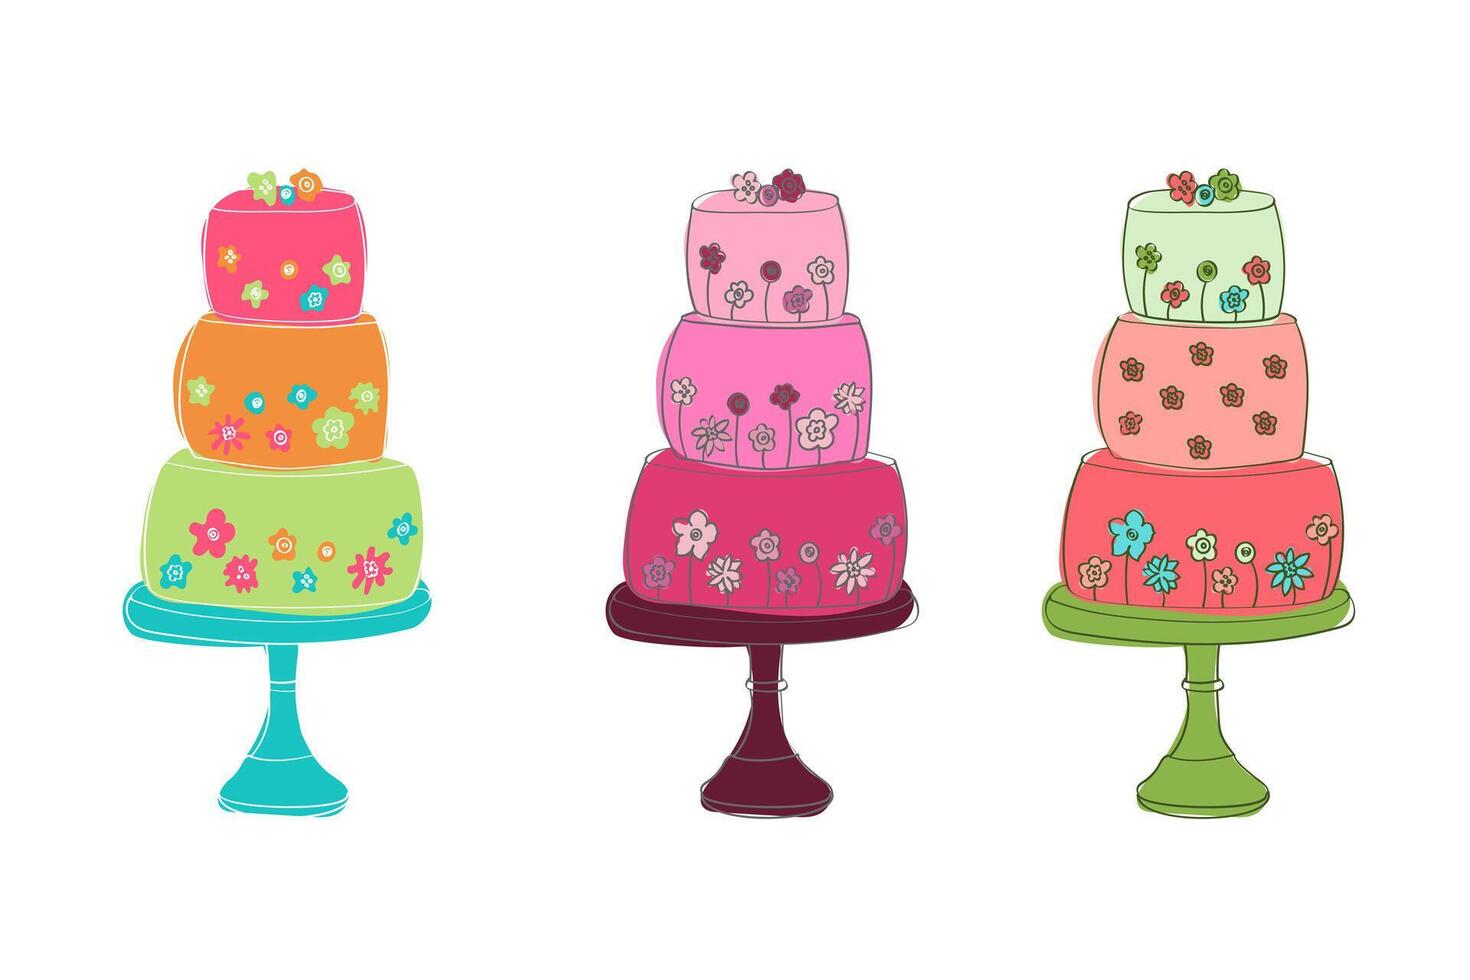 três bolos do diferente cores estão colocada em topo do cada outro, criando uma colorida e visualmente atraente pilha vetor